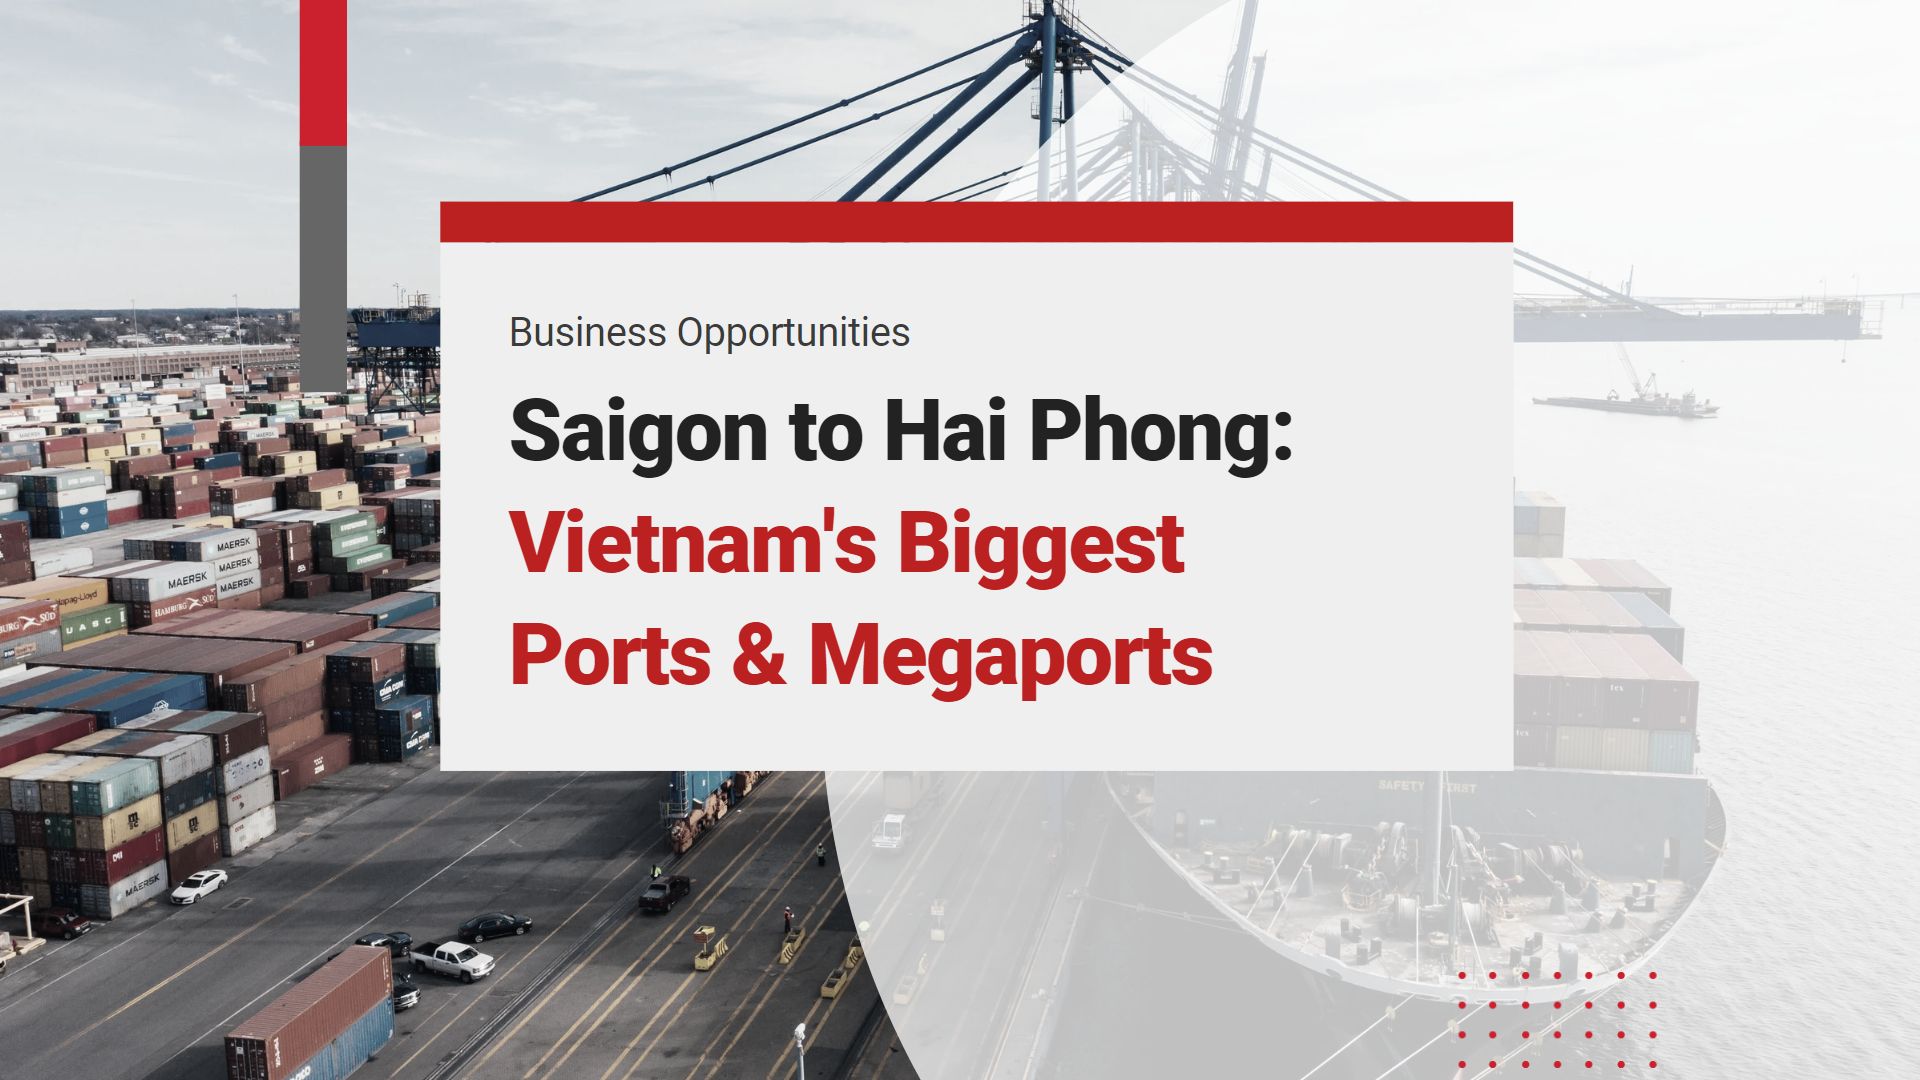 vietnam ports megaports